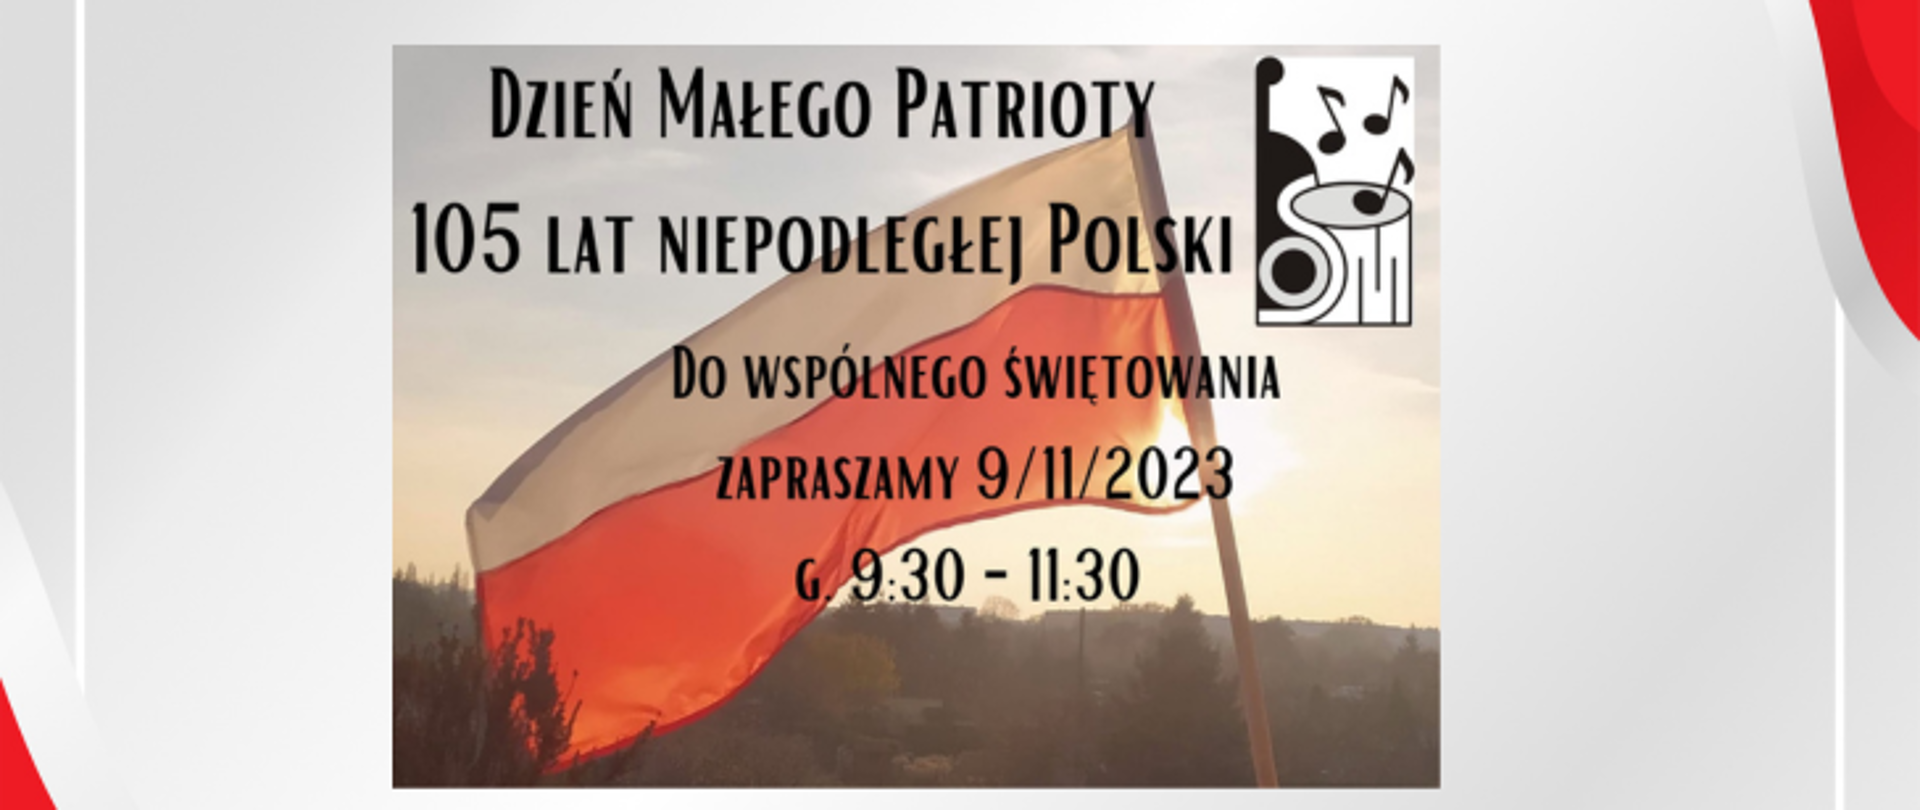 Grafika, która jest tłem przedstawia biało-czerwoną flagę Polski powiewającą na wietrze. Na horyzoncie widnieją drzewa, na które pada światło zachodzącego słońca. W prawym górnym rogu umieszczone jest logo szkoły, przedstawiające dwa złączone ze sobą instrumenty, smyczkowy i perkusyjny nad nimi nierównomiernie umieszczone są trzy nuty, ósemki.
Dużą czarną czcionką został umieszczony napis: tytuł Dzień Małego Patrioty, w następnych czterech linijkach czytamy: 105 lat Niepodległej Polski, Do wspólnego świętowania zapraszamy 9/11/2023 godzina 9.30-11.30. 